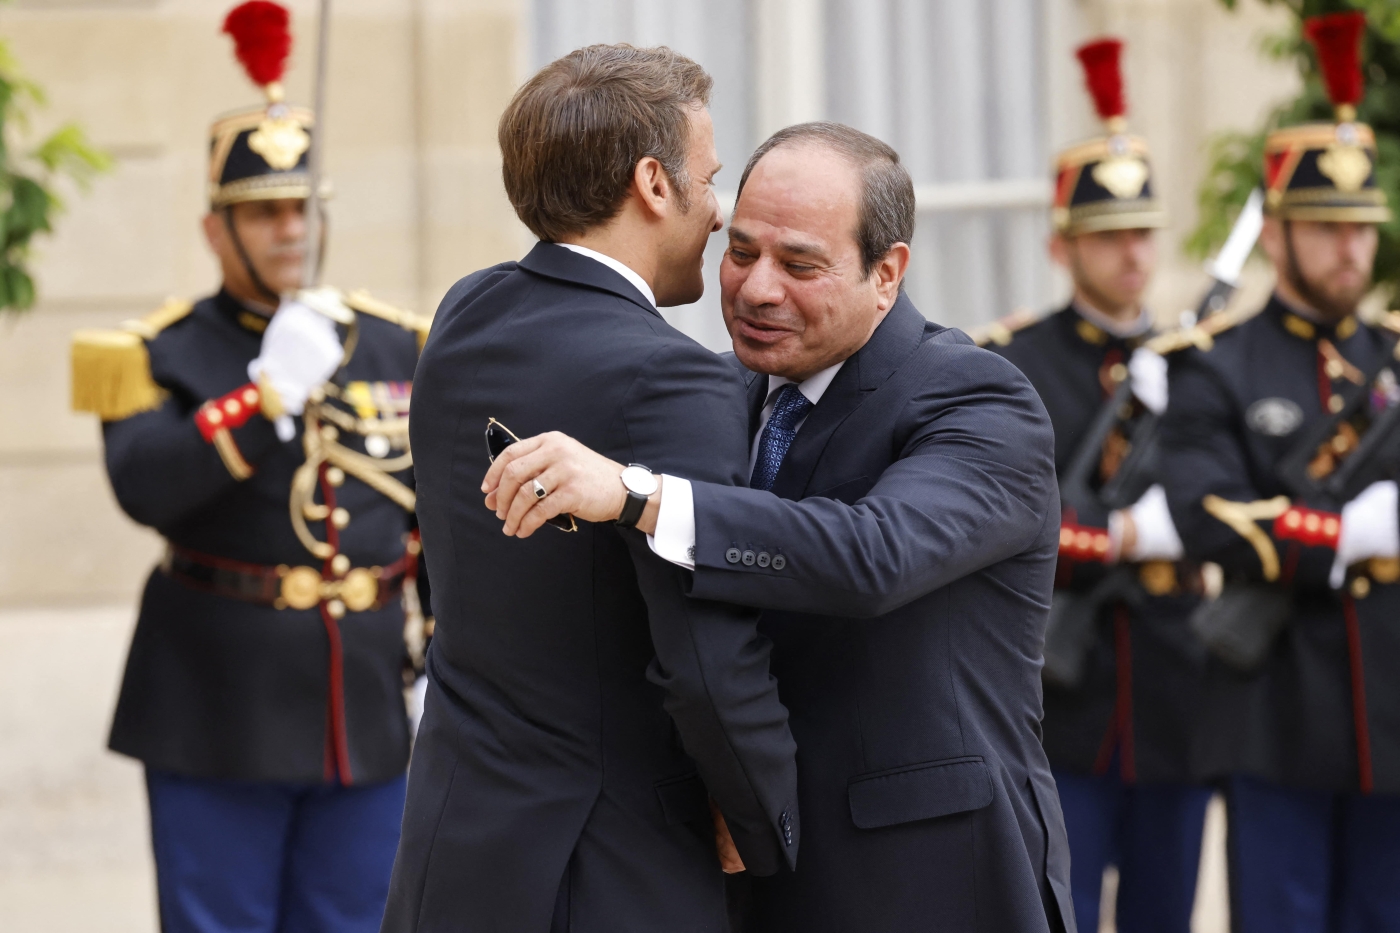 Le président français Emmanuel Macron donne l’accolade à son homologue égyptien Abdel Fattah al-Sissi (à droite) à son arrivée au palais de l’Elysée, le 22 juillet 2022 à Paris (AFP)